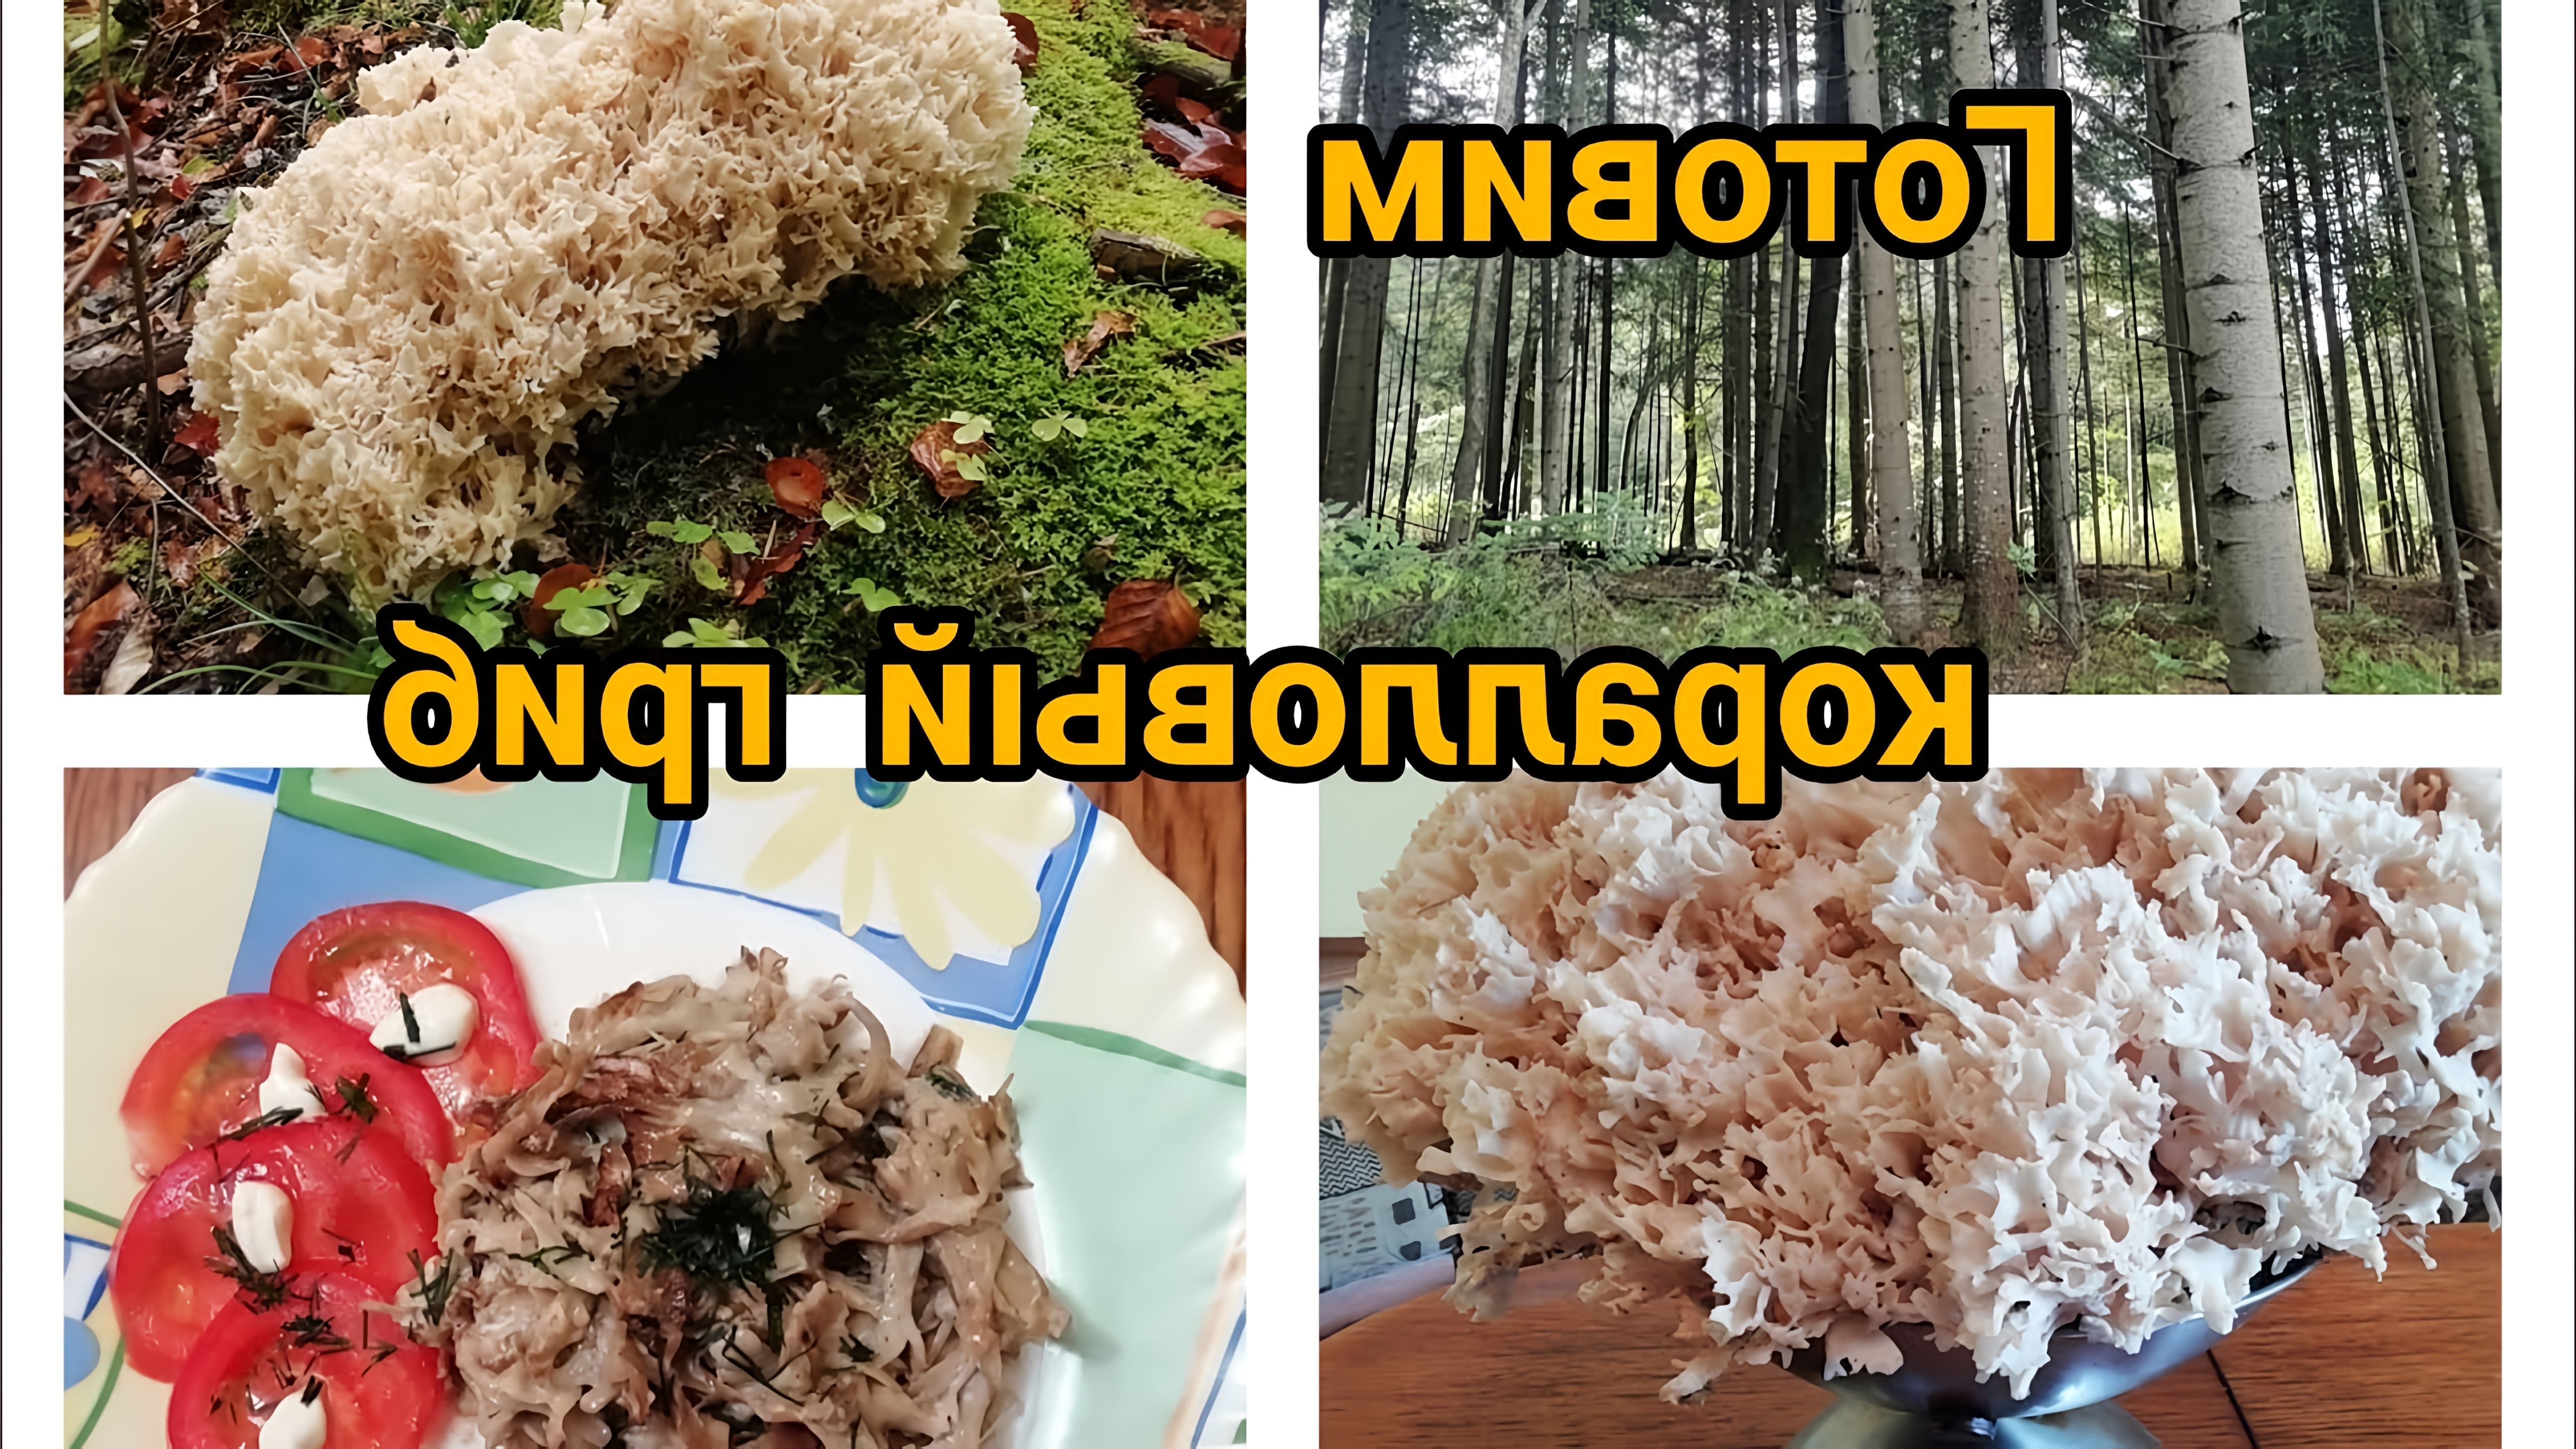 В этом видео автор готовит коралловый гриб, который также известен как оленьи рожки или коралловый гриб